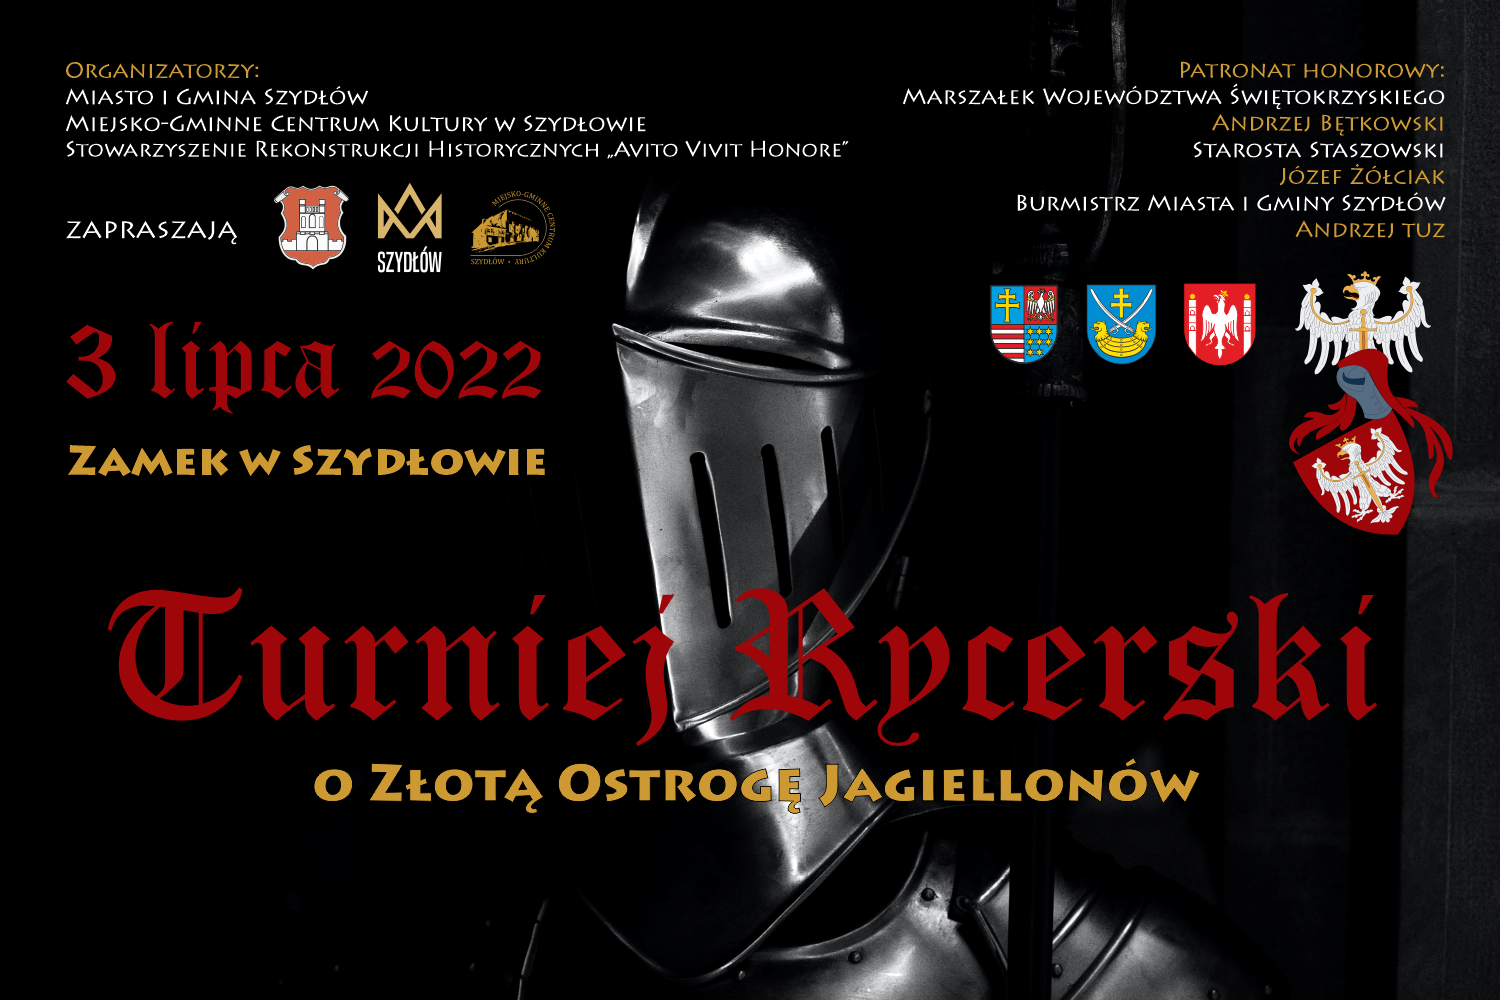 
Wielki Turniej Rycerski o Z³ot± Ostrogê Jagiellonów odbêdzie siê w niedzielê 3 lipca na dziedziñcu zamkowym w Szyd³owie. 

